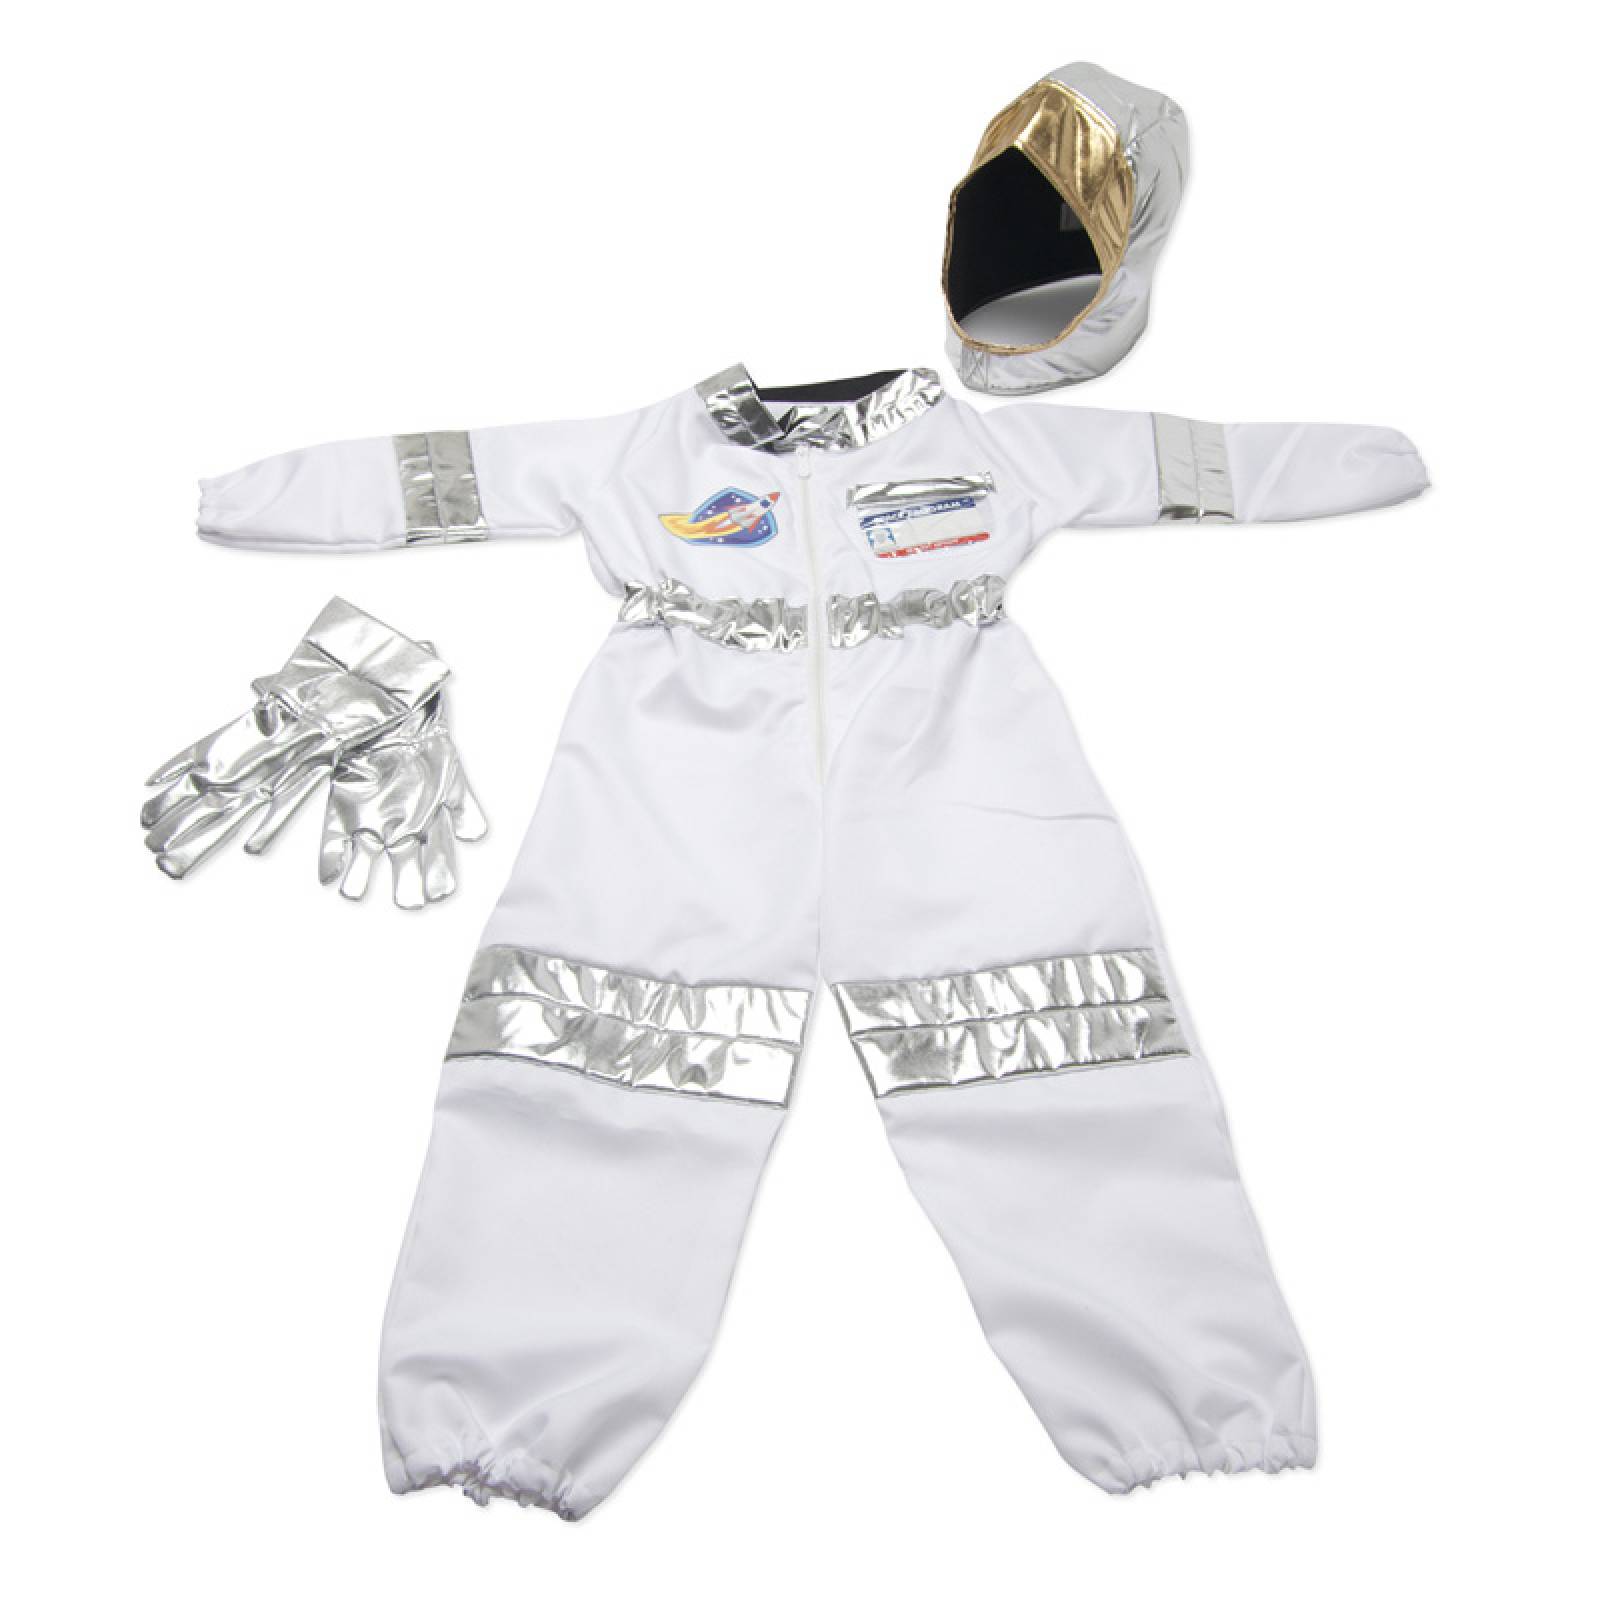 Fancy Dress Role Play Costume Set - Astronaut thumbnails